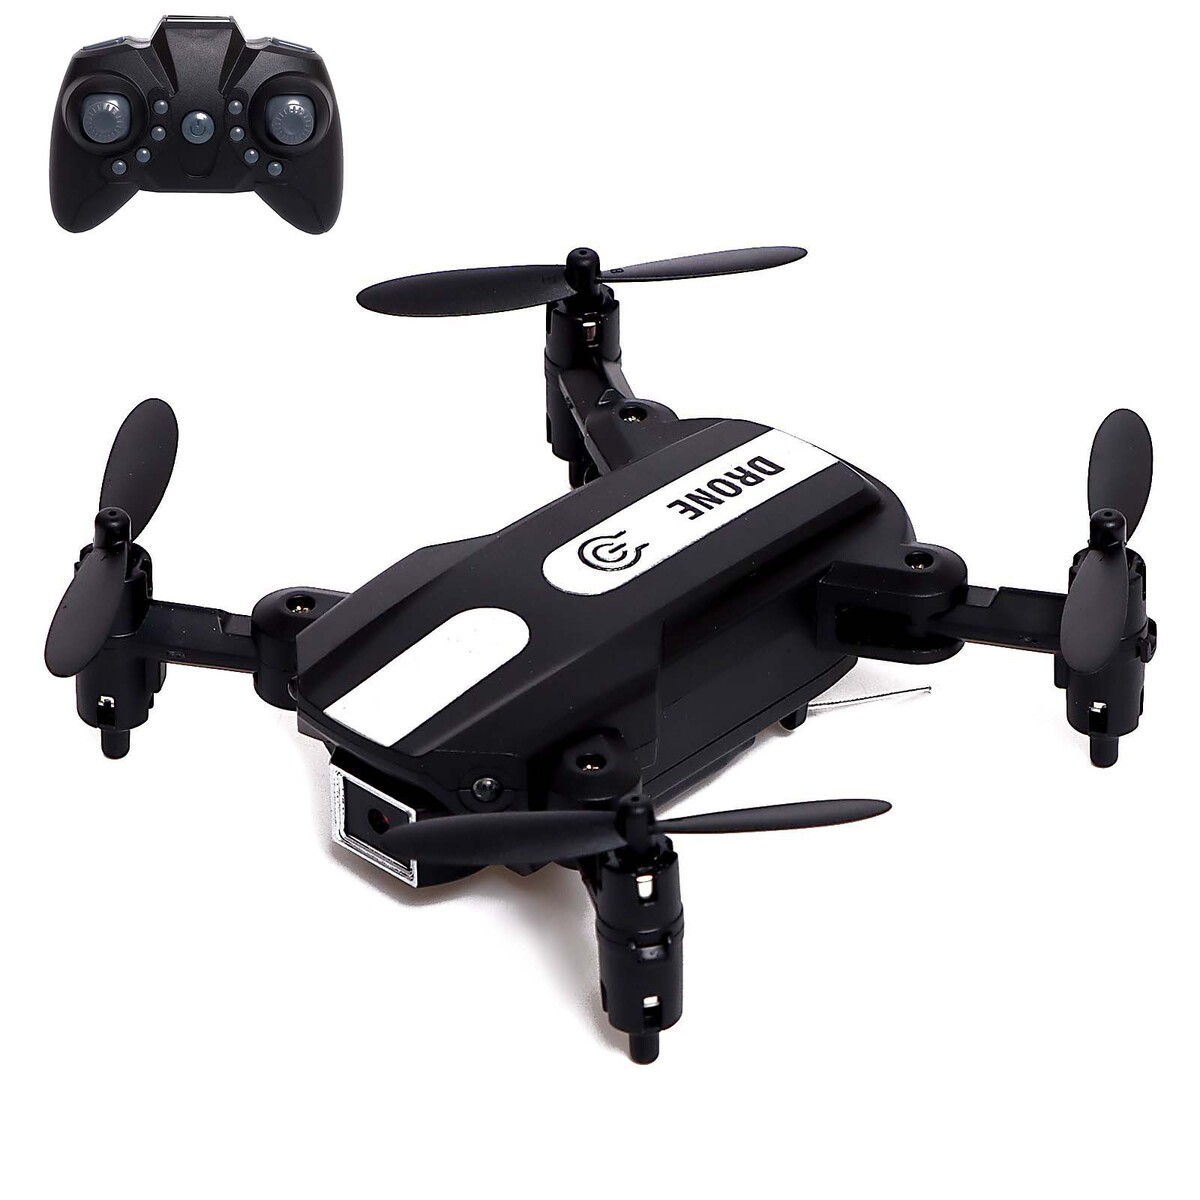 Квадрокоптер flash drone, камера 480p, wi-fi, с сумкой, цвет черный радиоуправляемый квадрокоптер mjx bugs 7 4k v2 rtf 2 4g с сумкой mjx b7 v2 bag коптер